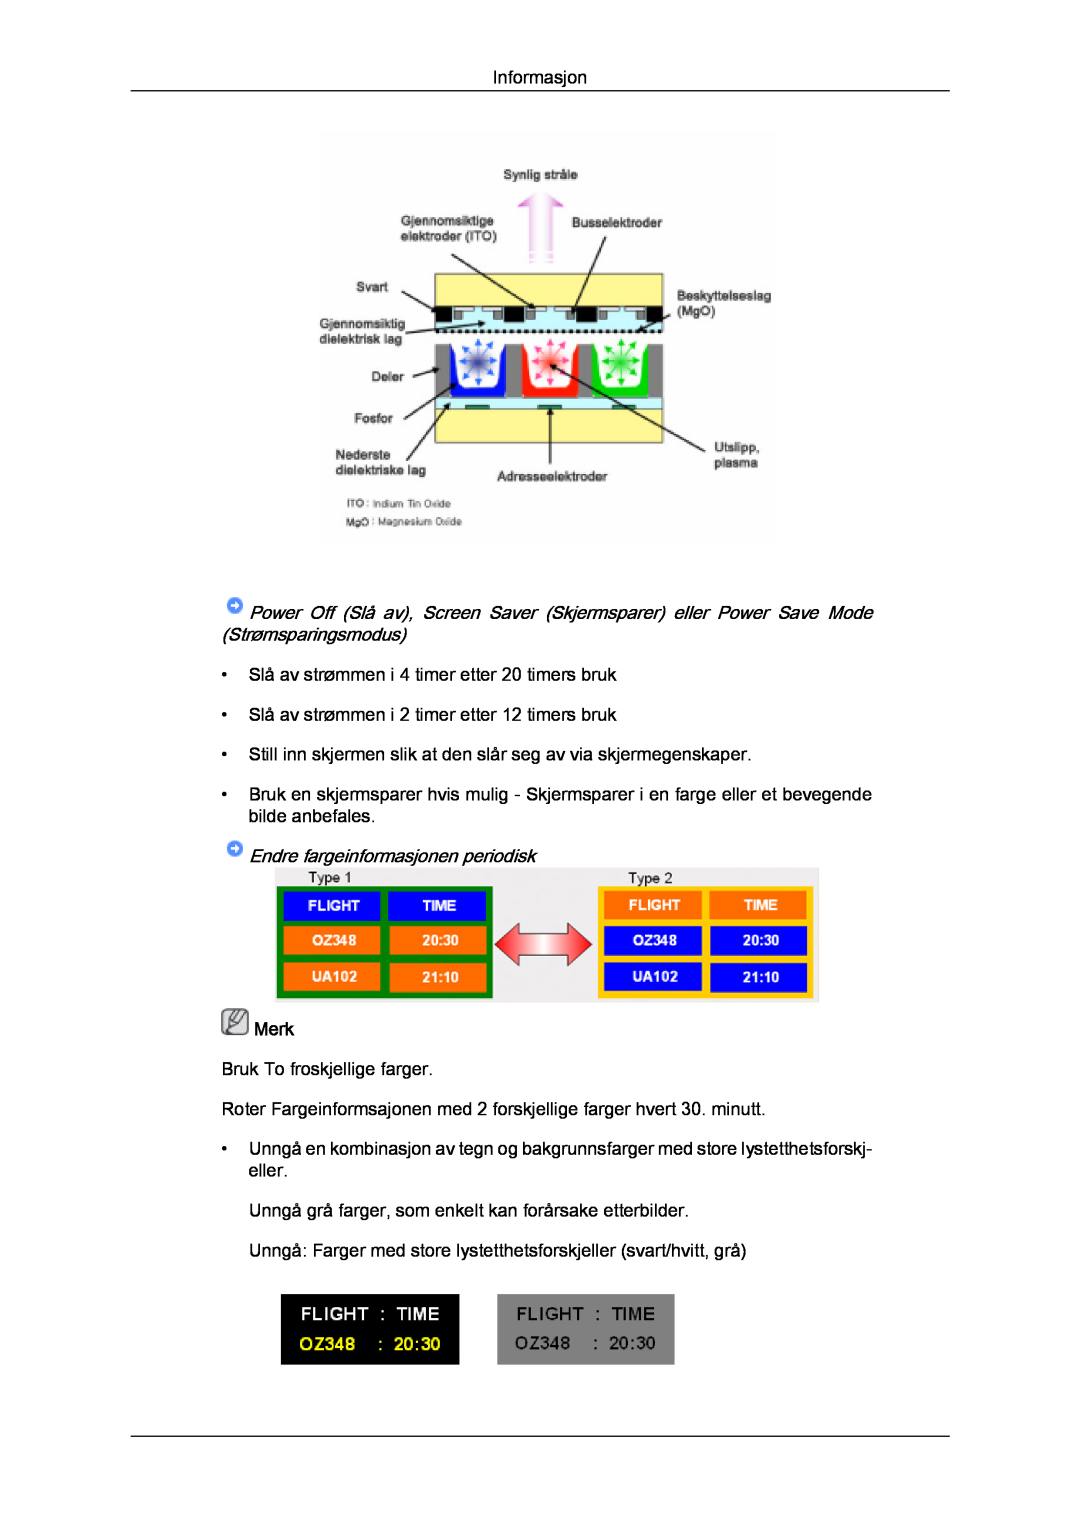 Samsung PH63KPFLBF/EN, PH50KPFLBF/EN manual Endre fargeinformasjonen periodisk, Informasjon, Merk 